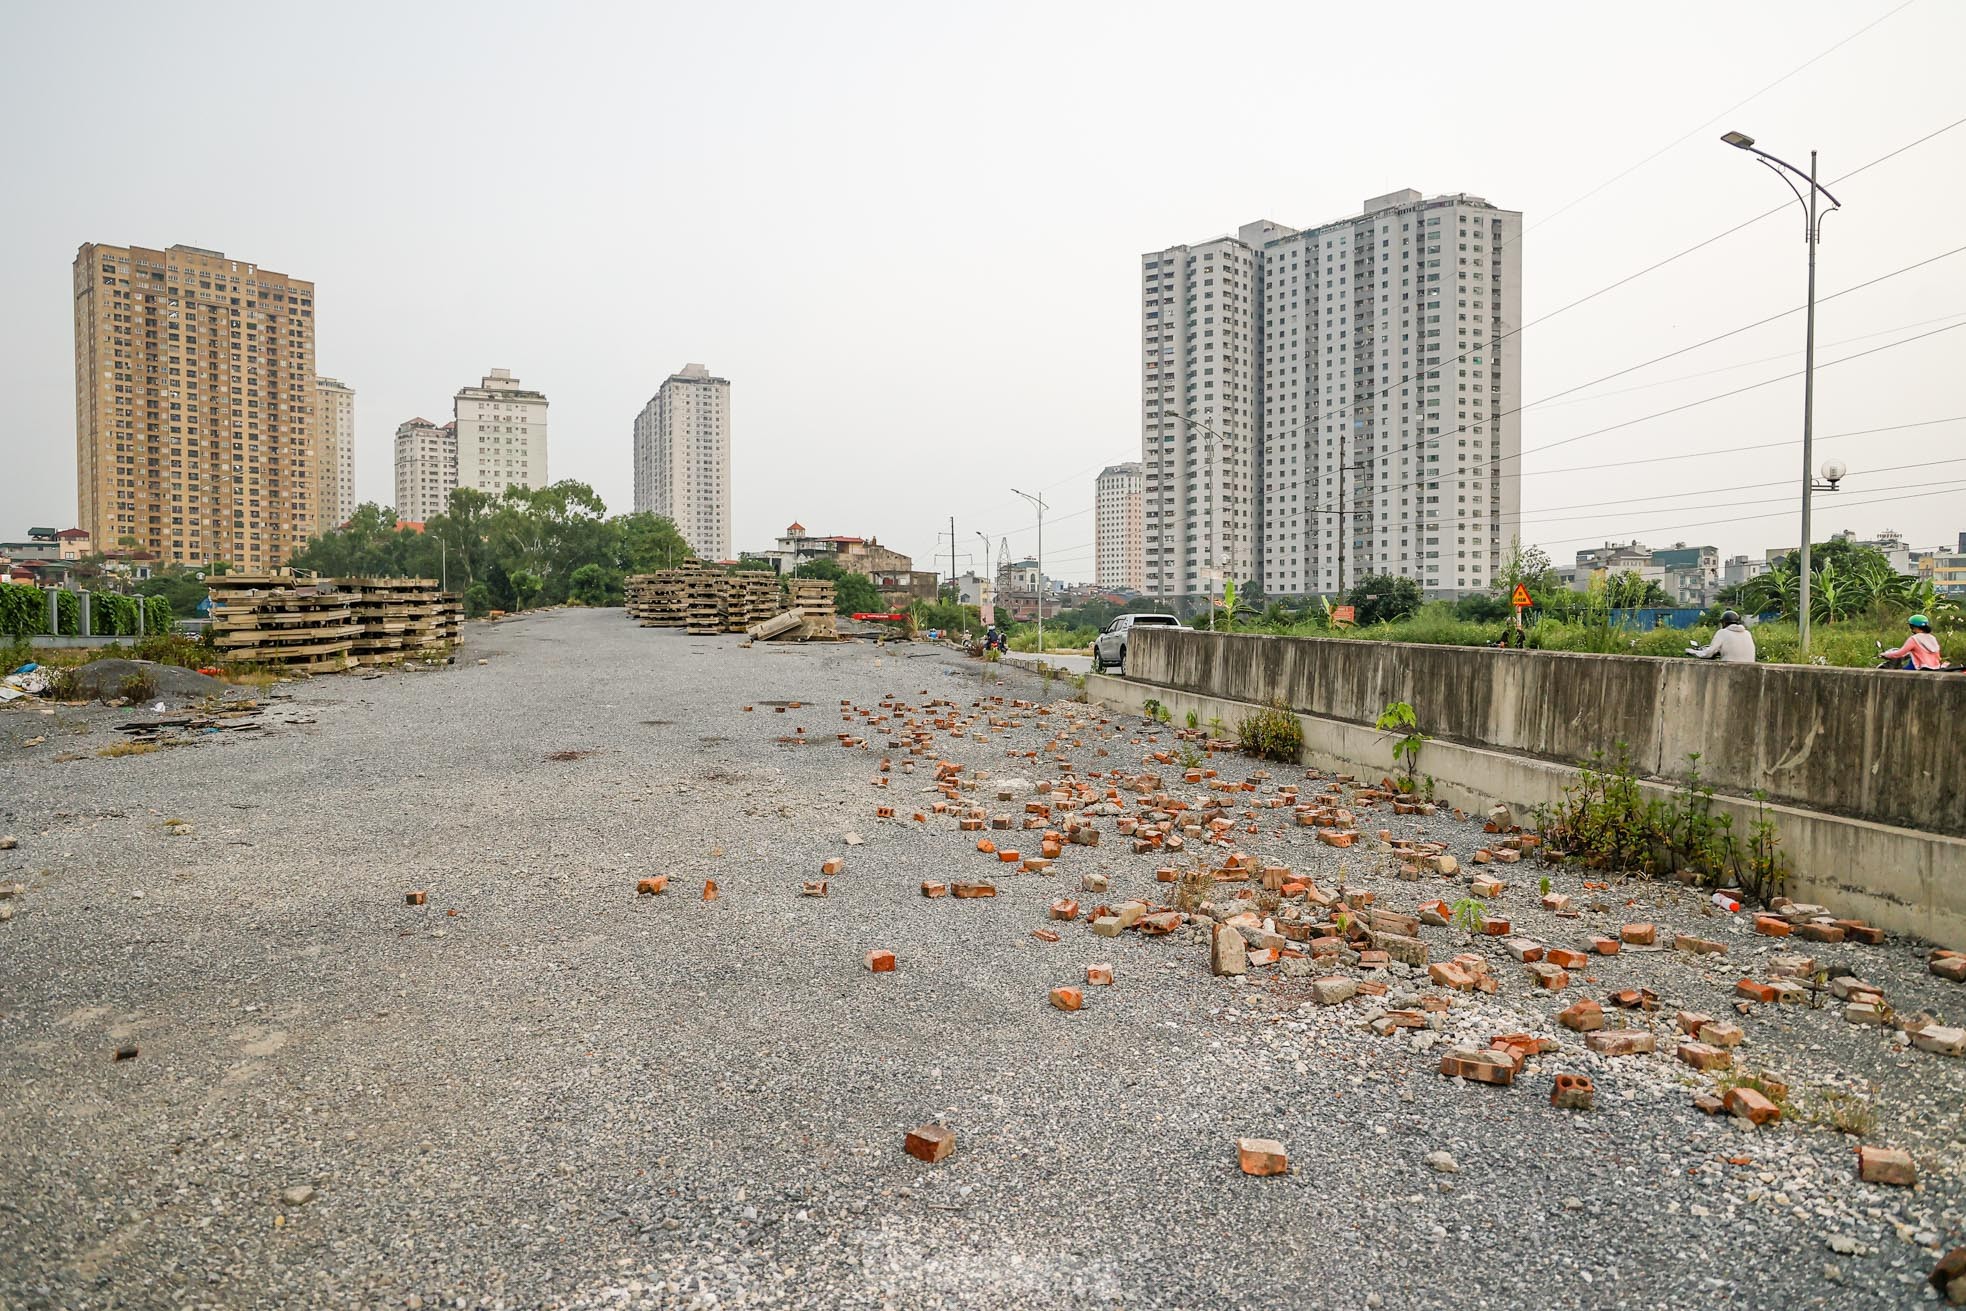 Cầu vượt bỏ hoang trên đại lộ nghìn tỷ ở Hà Nội - Ảnh 6.